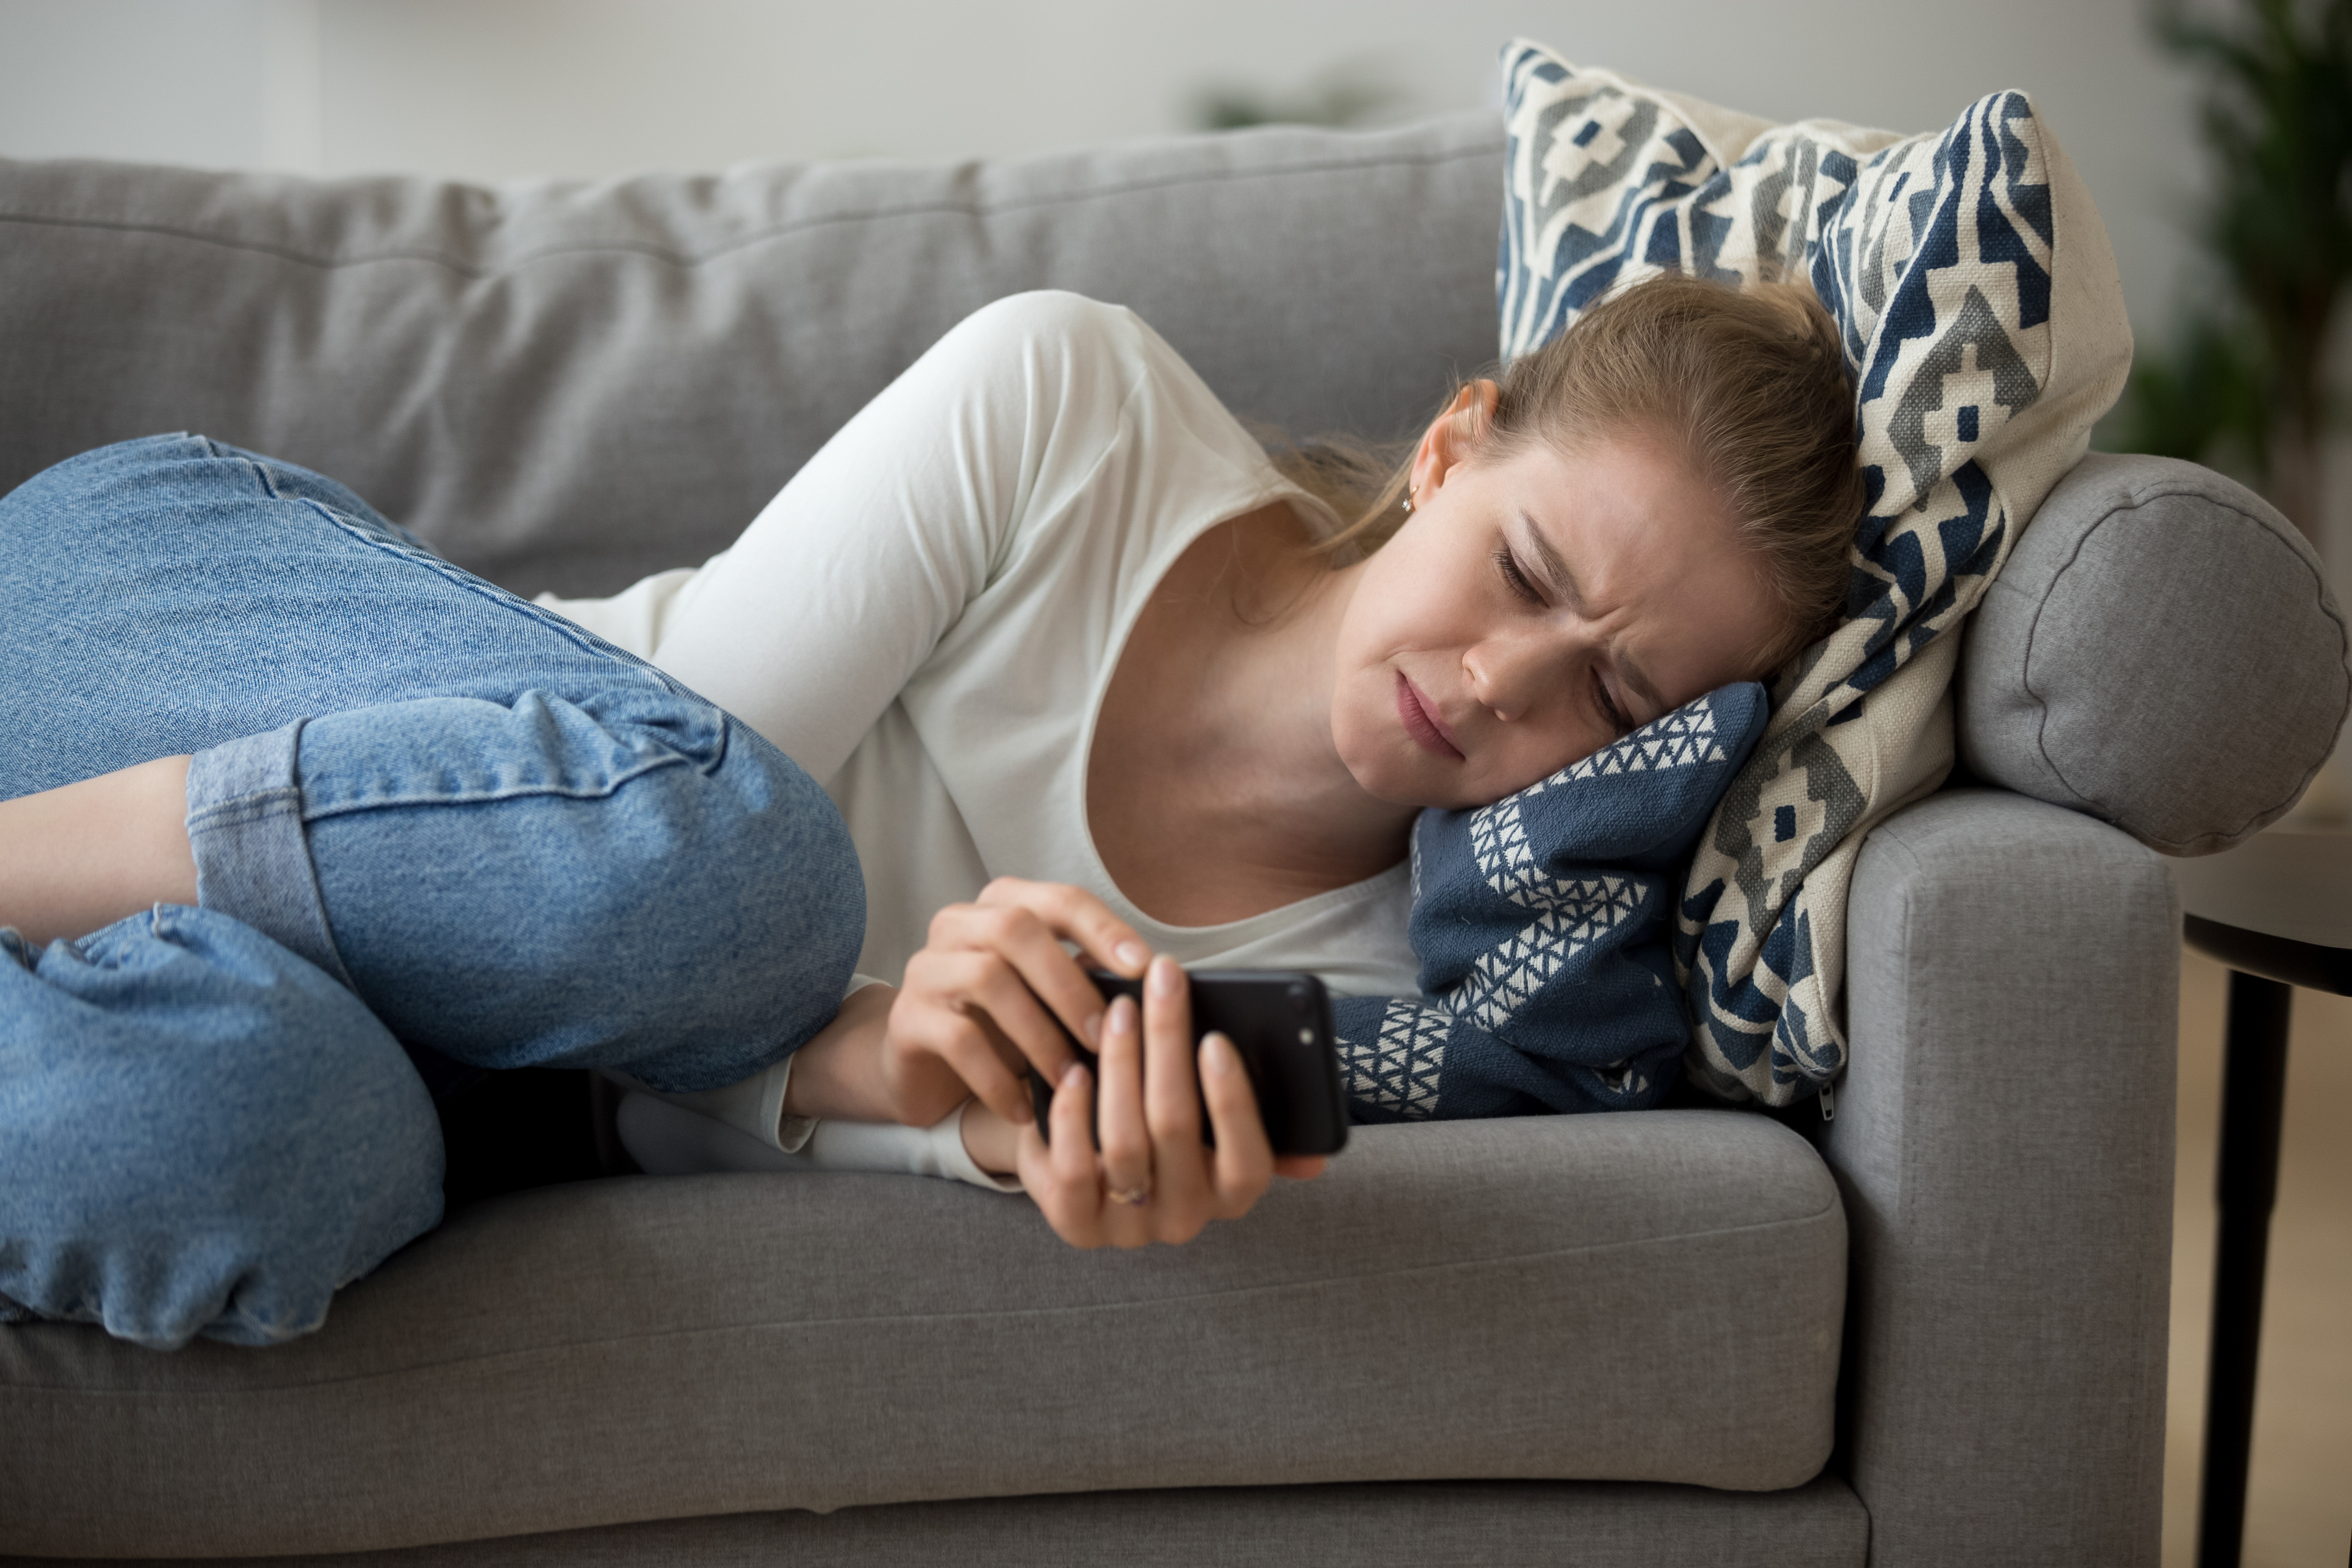 Femme pleurant sur un canapé | Source : Shutterstock